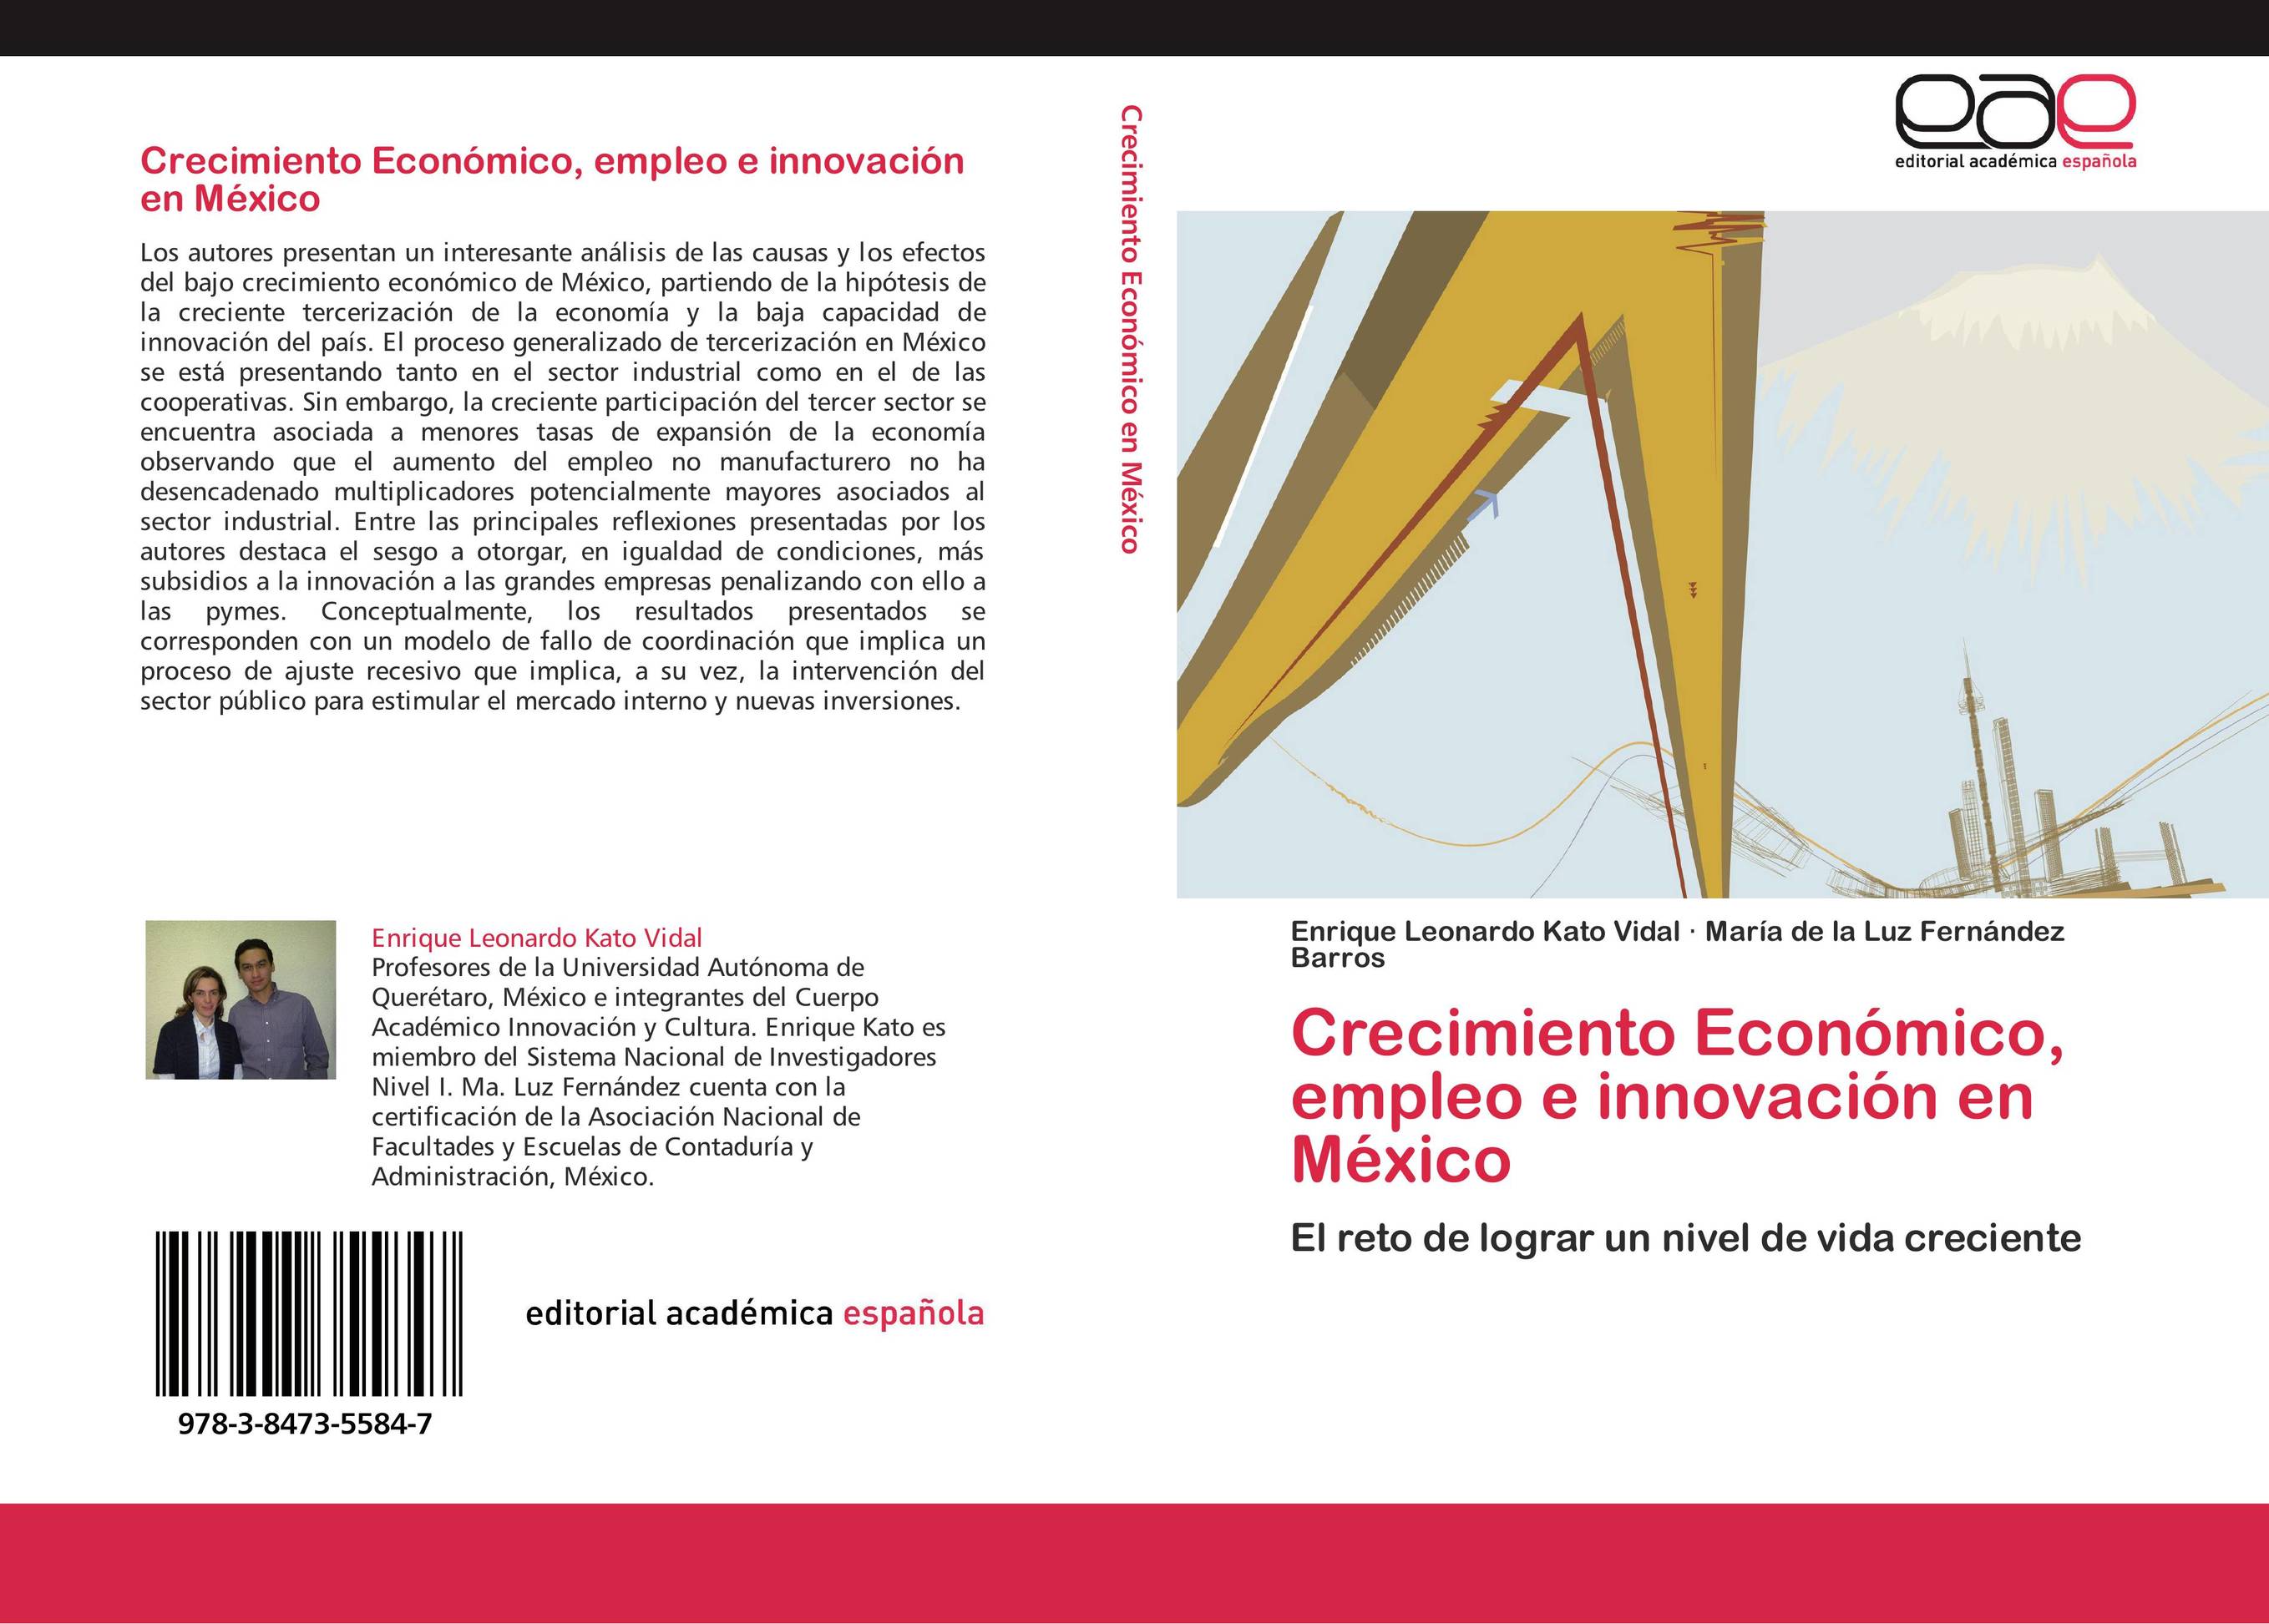 Crecimiento Económico, empleo e innovación en México